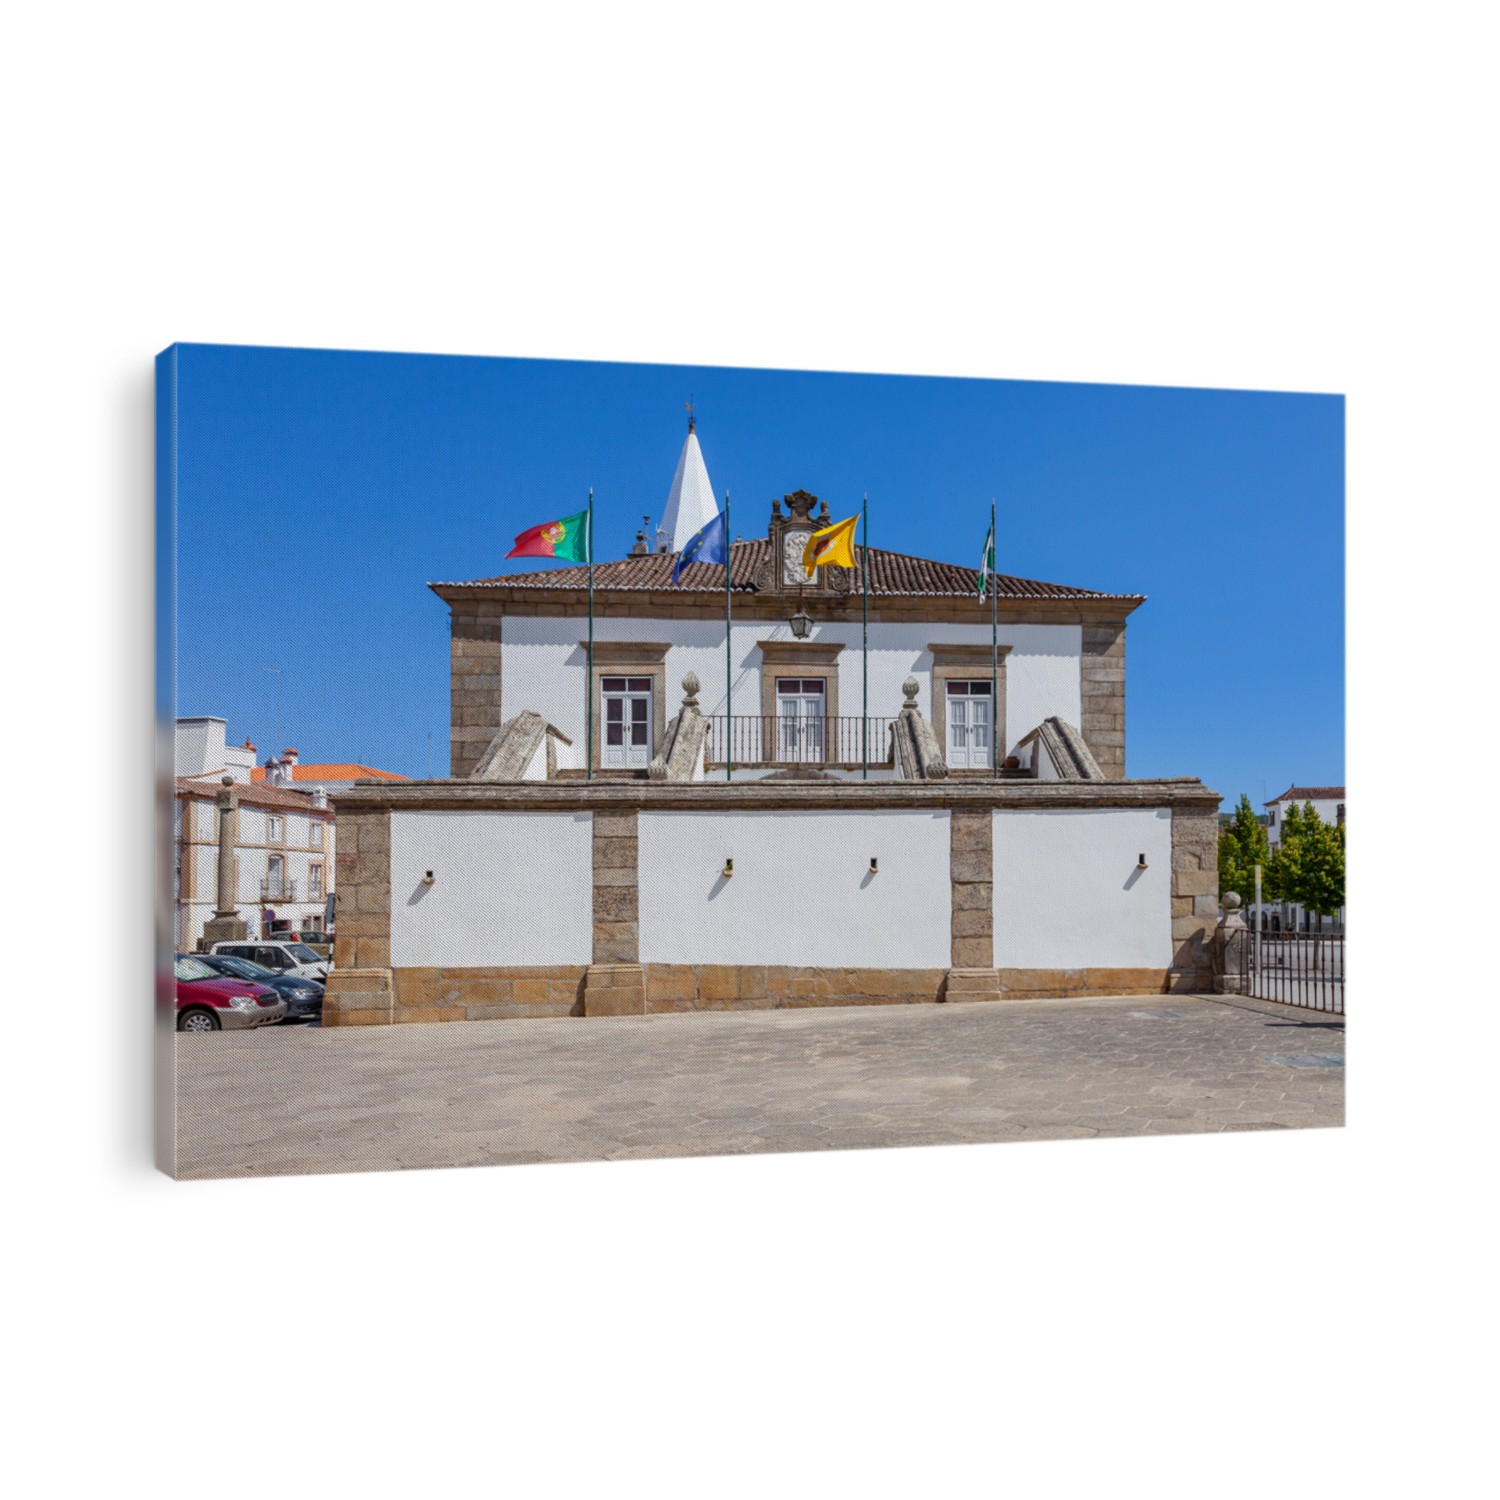 City-Hall building of Castelo de Vide. Alto Alentejo, Portugal